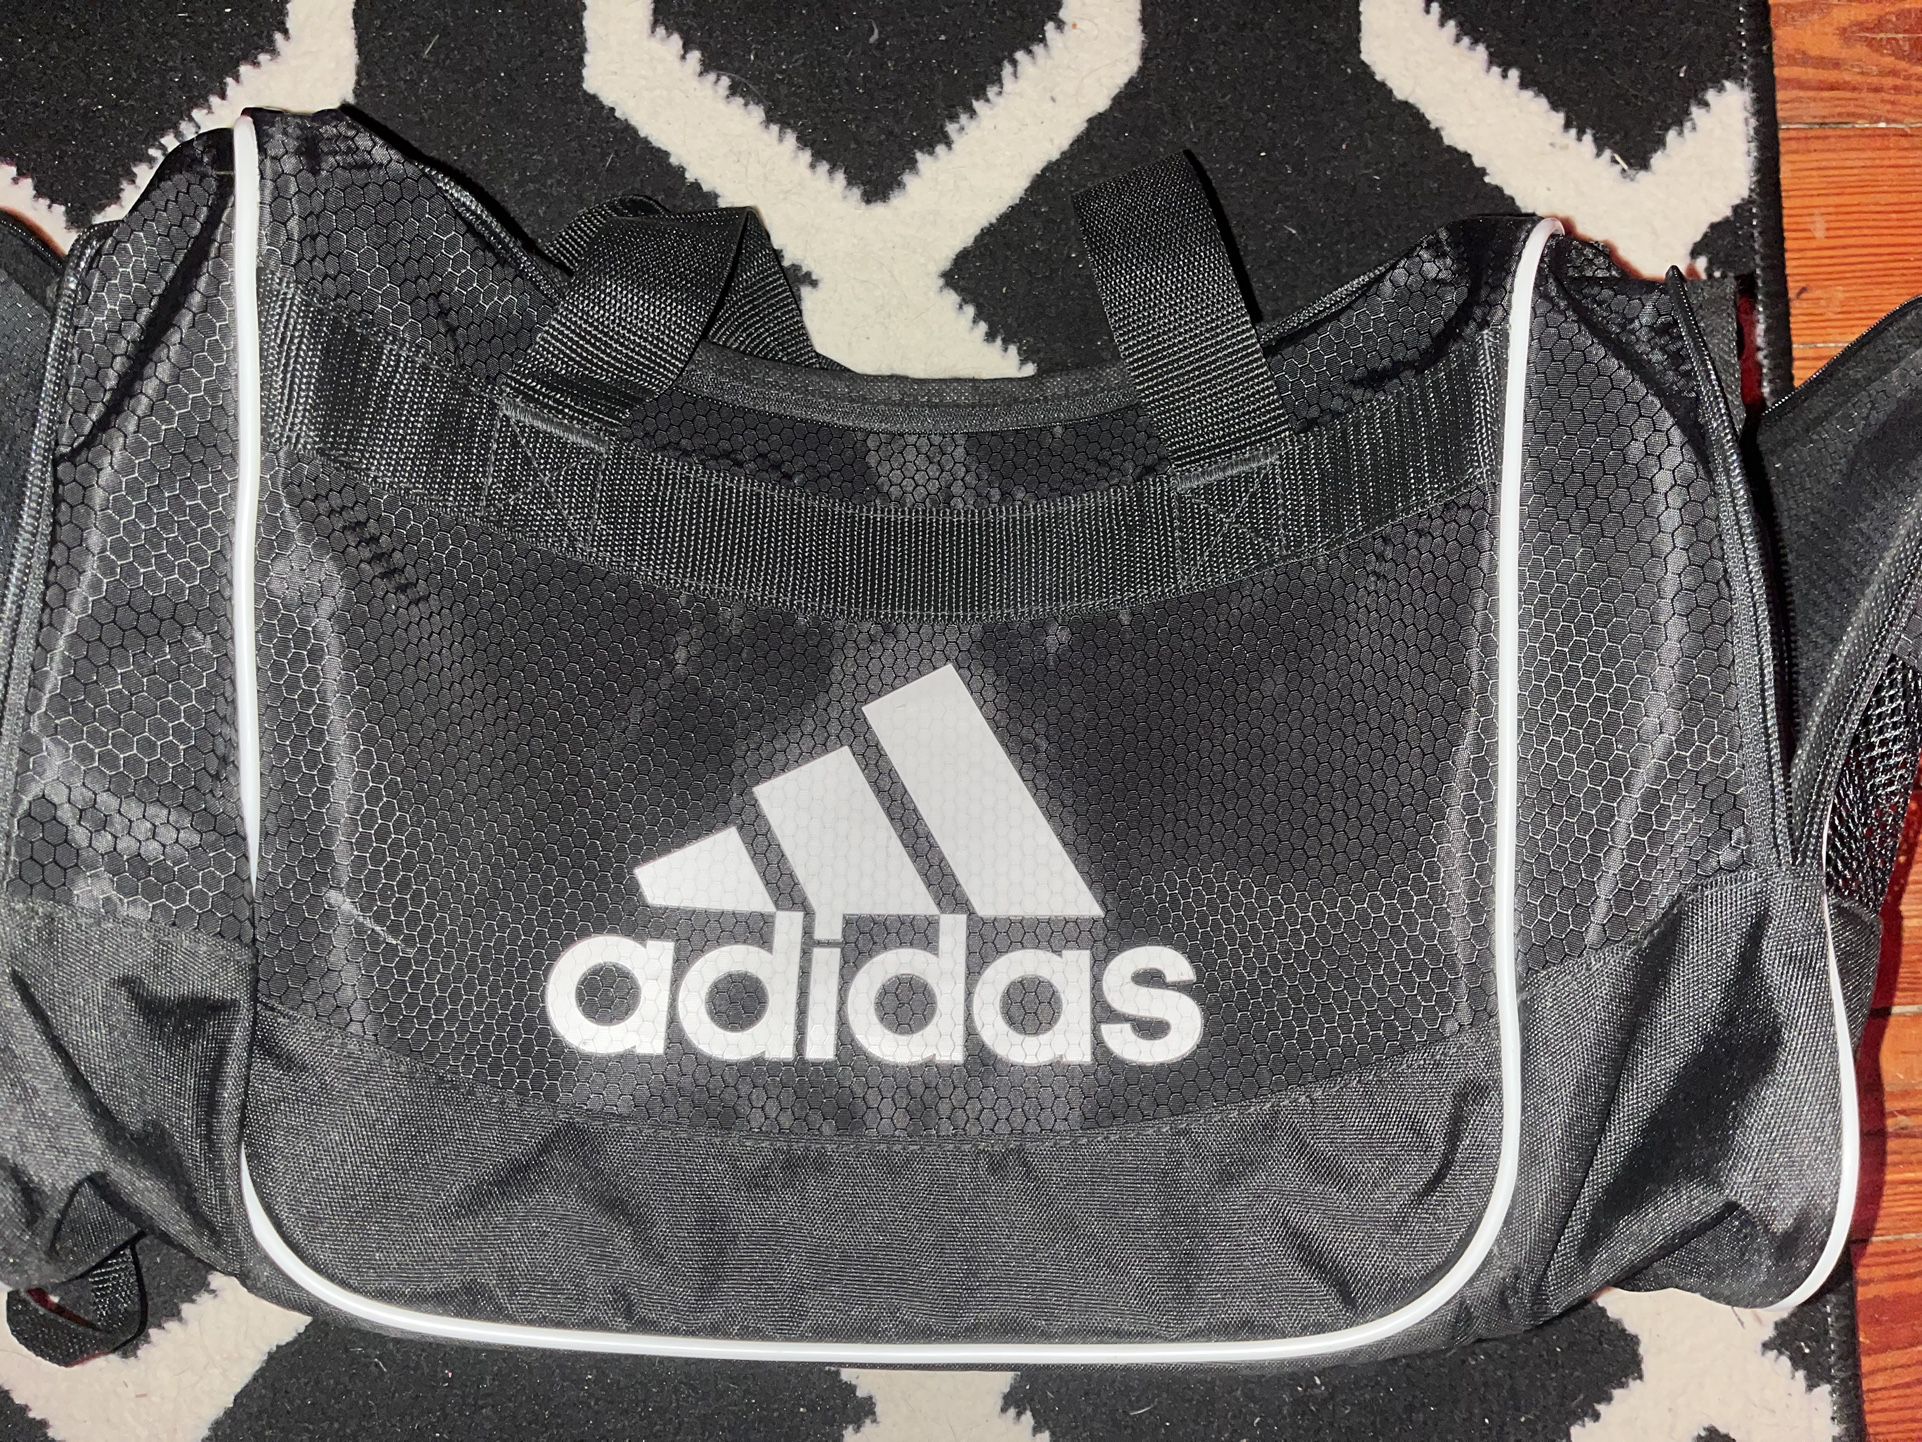 Adidas duffel bag